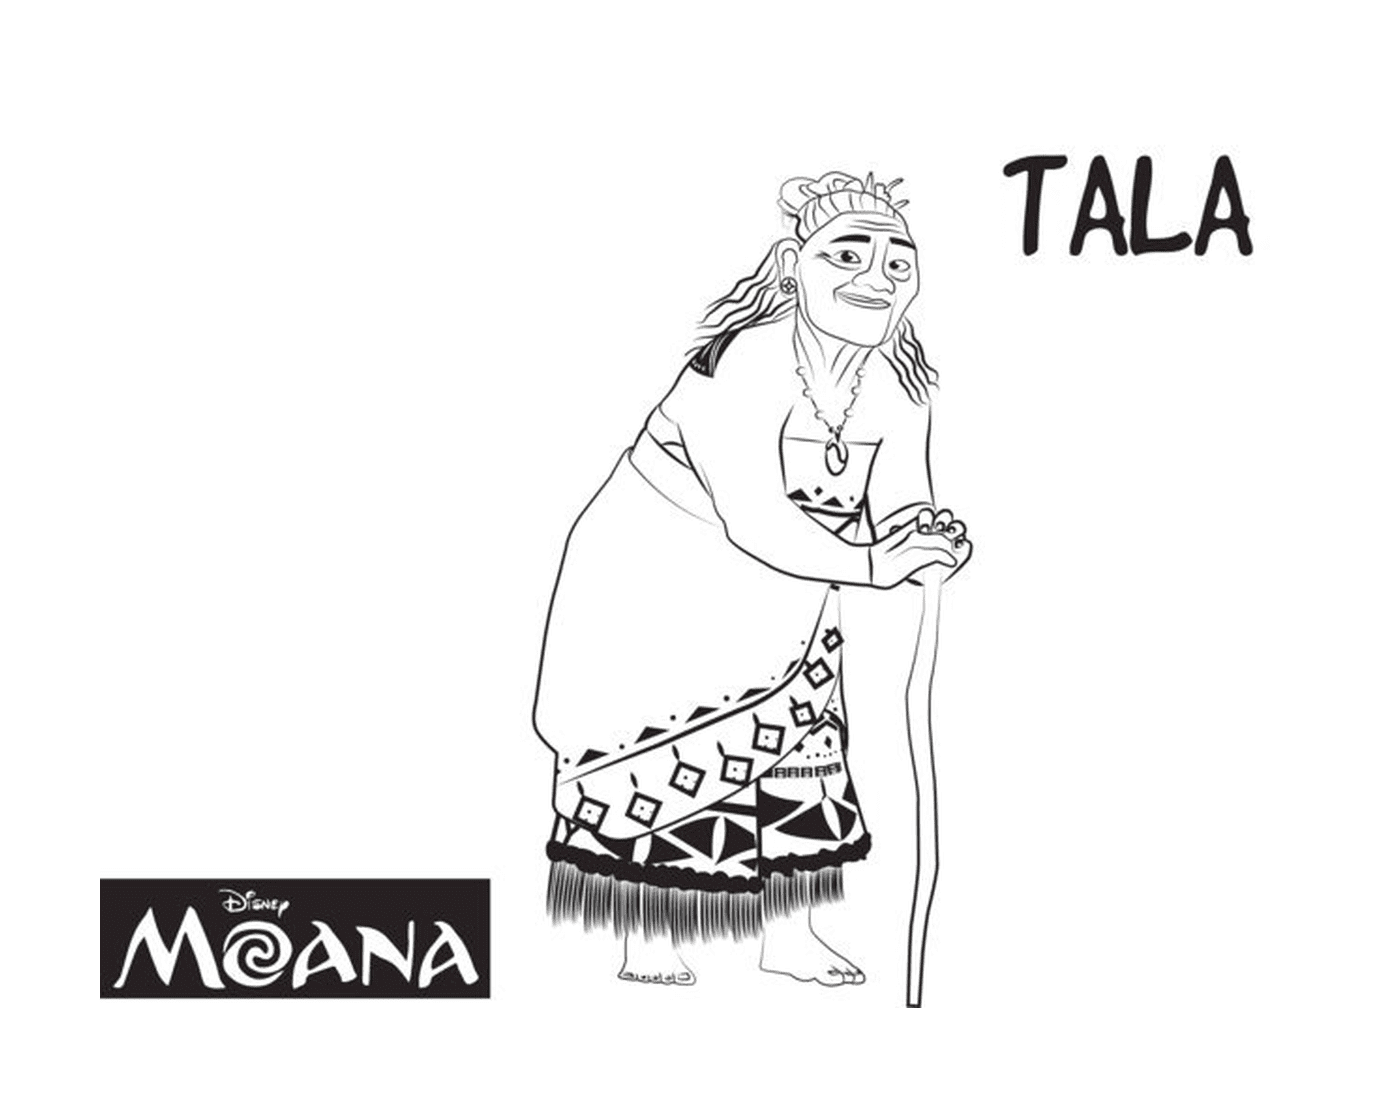  Tala, guardião espiritual de Moana 